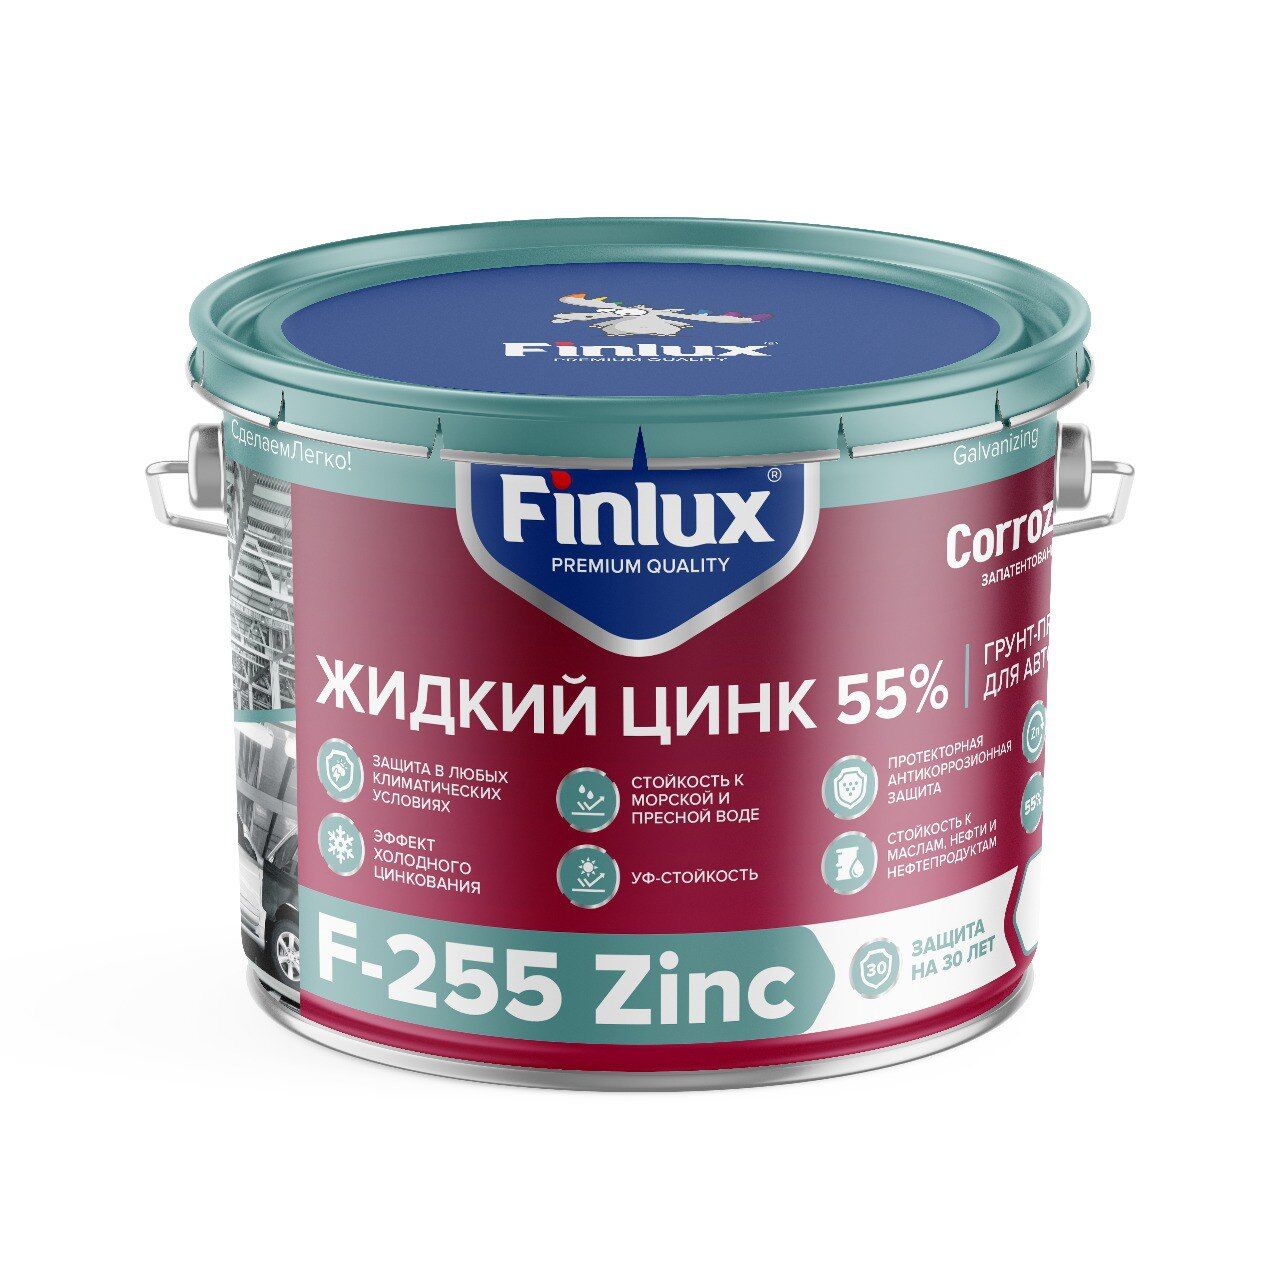 Цинконаполненный грунт-протектор для антикоррозионной защиты металла от ржавчины Finlux F-255 Zinc CorrozoStop 1 кг